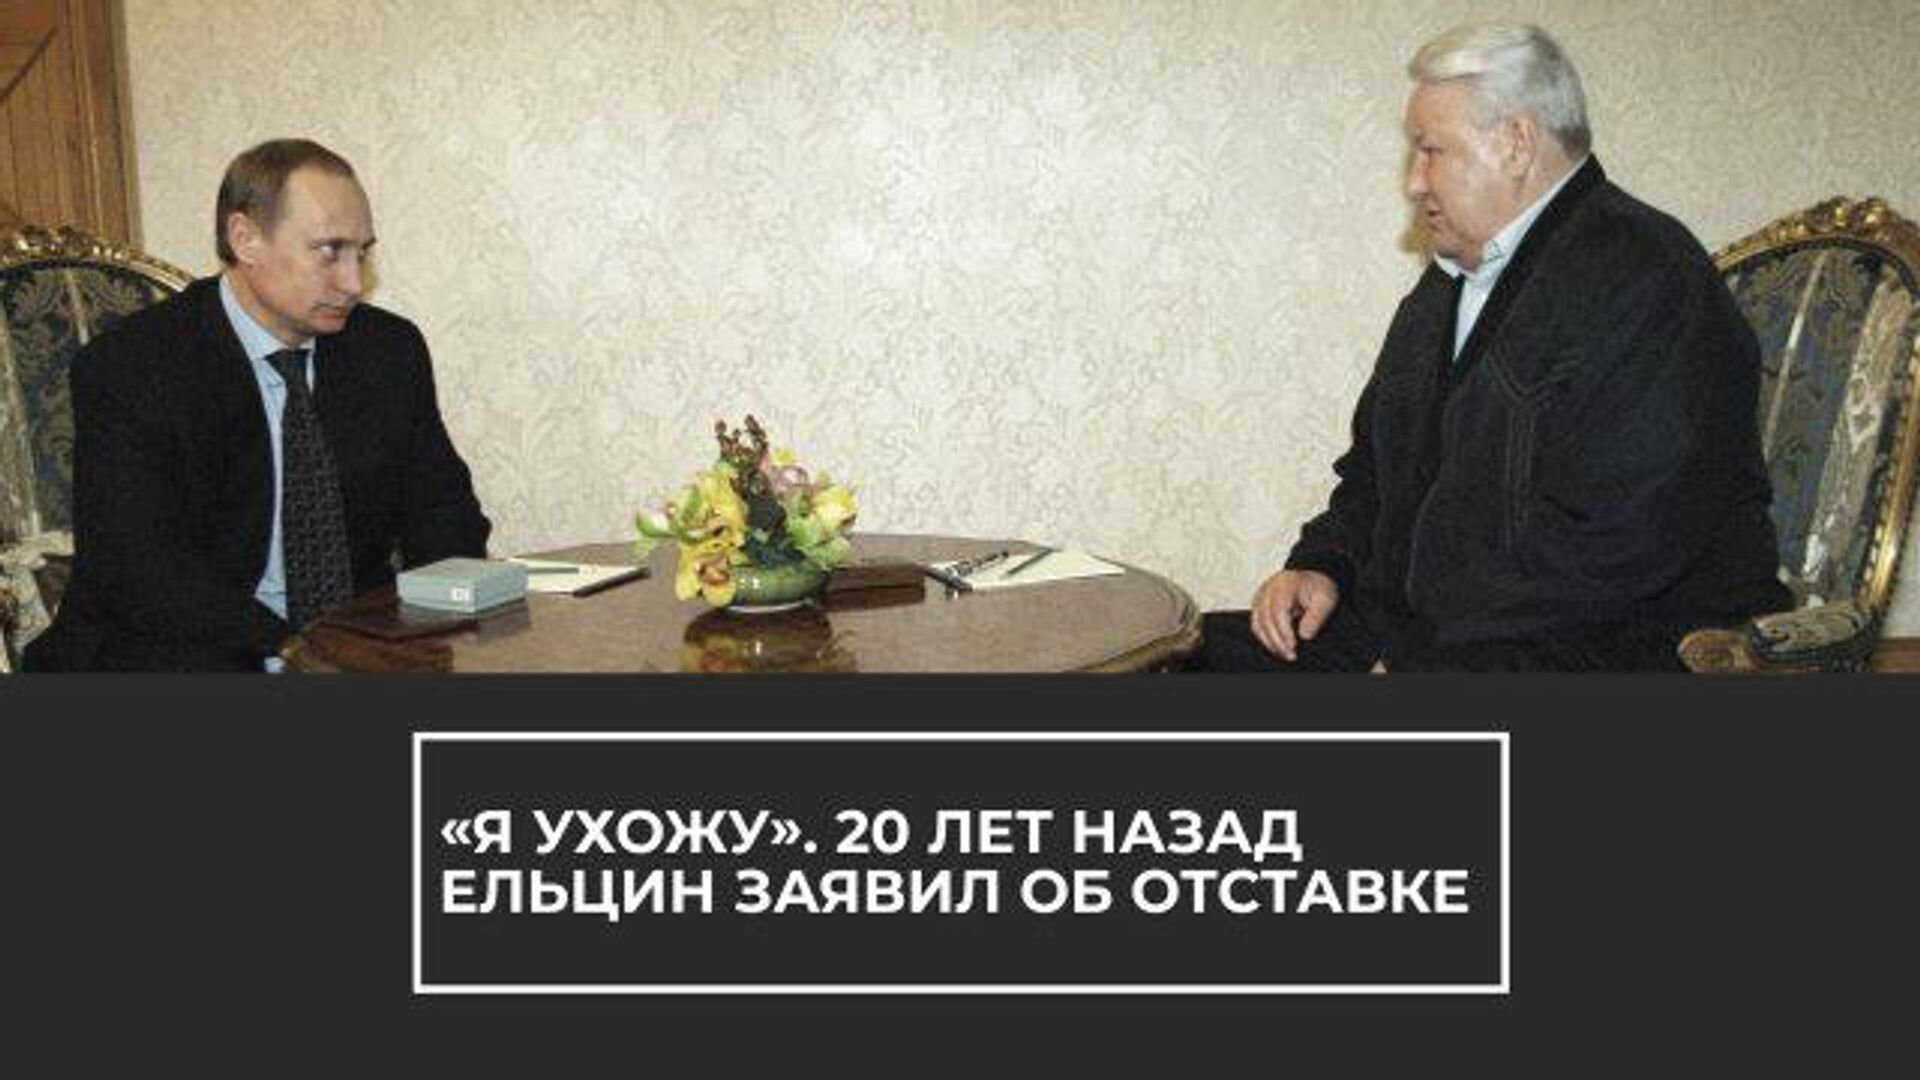 Ельцин говорит я устал. Отставка президента б.н. Ельцина.. Отставка Ельцина 31 декабря 1999. Ельцин отставка 31.12.1999.